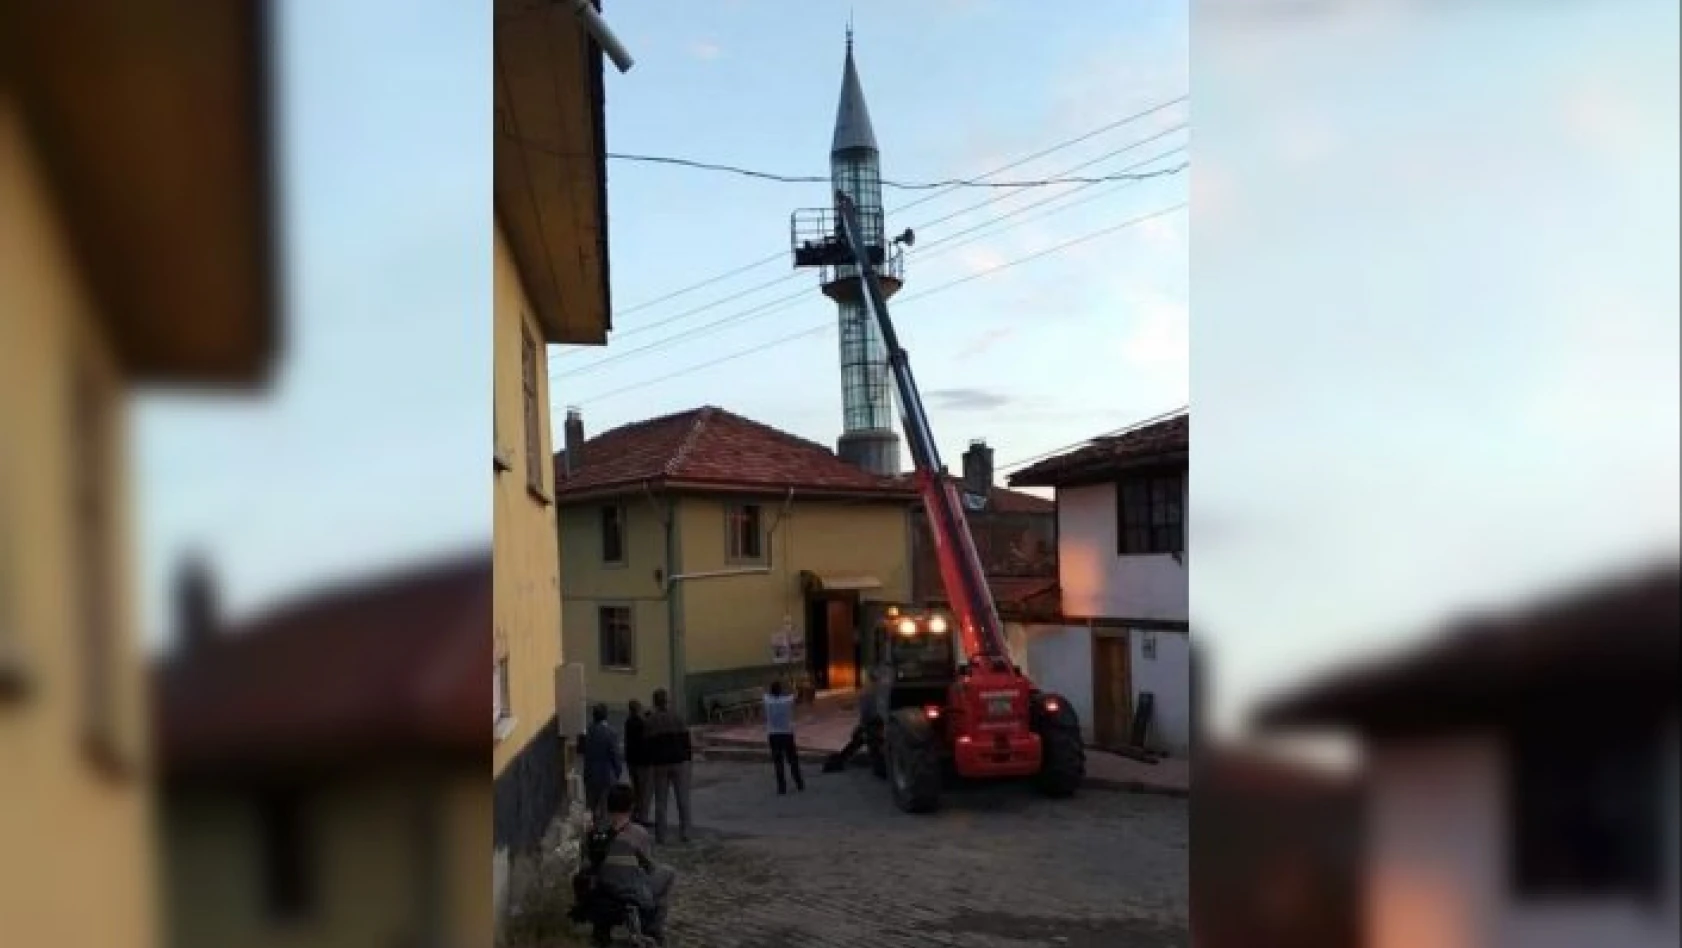 Yıkılma tehlikesi bulunan minare onarıldı, olası faciadan dönüldü